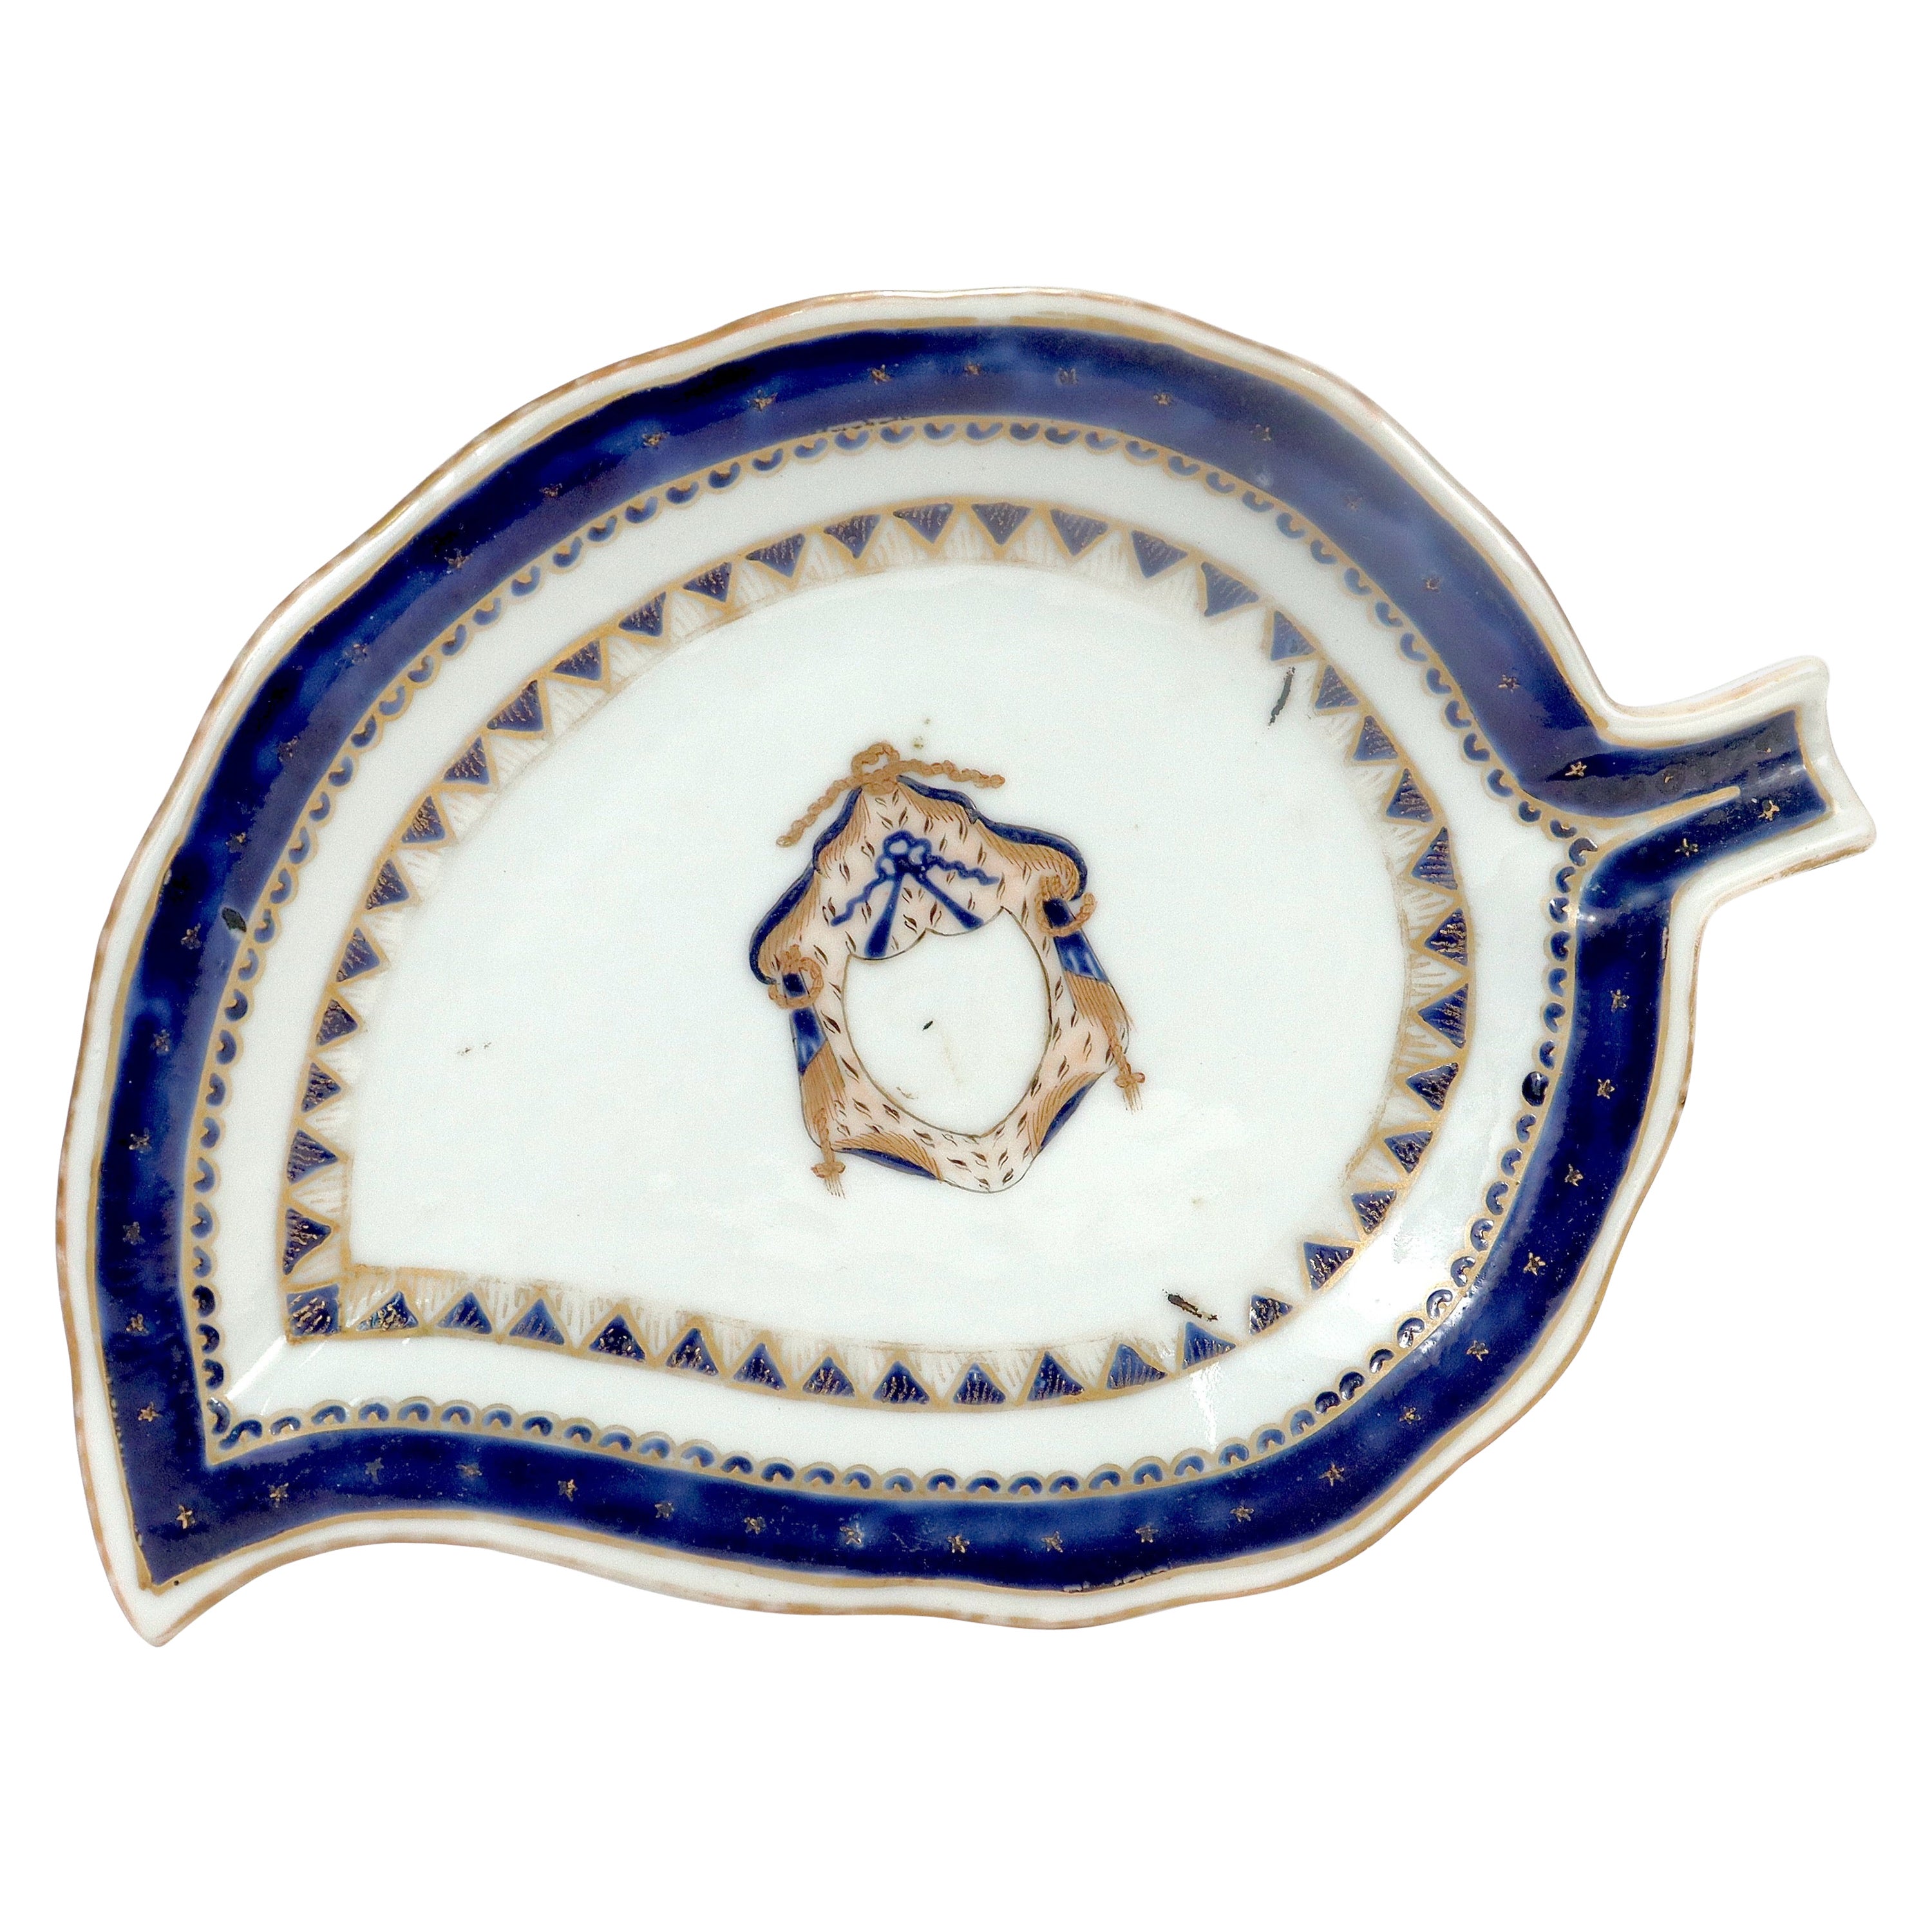 Alte oder antike chinesische Export-Porzellanschale in Tabakblattform mit Wappen aus Porzellan